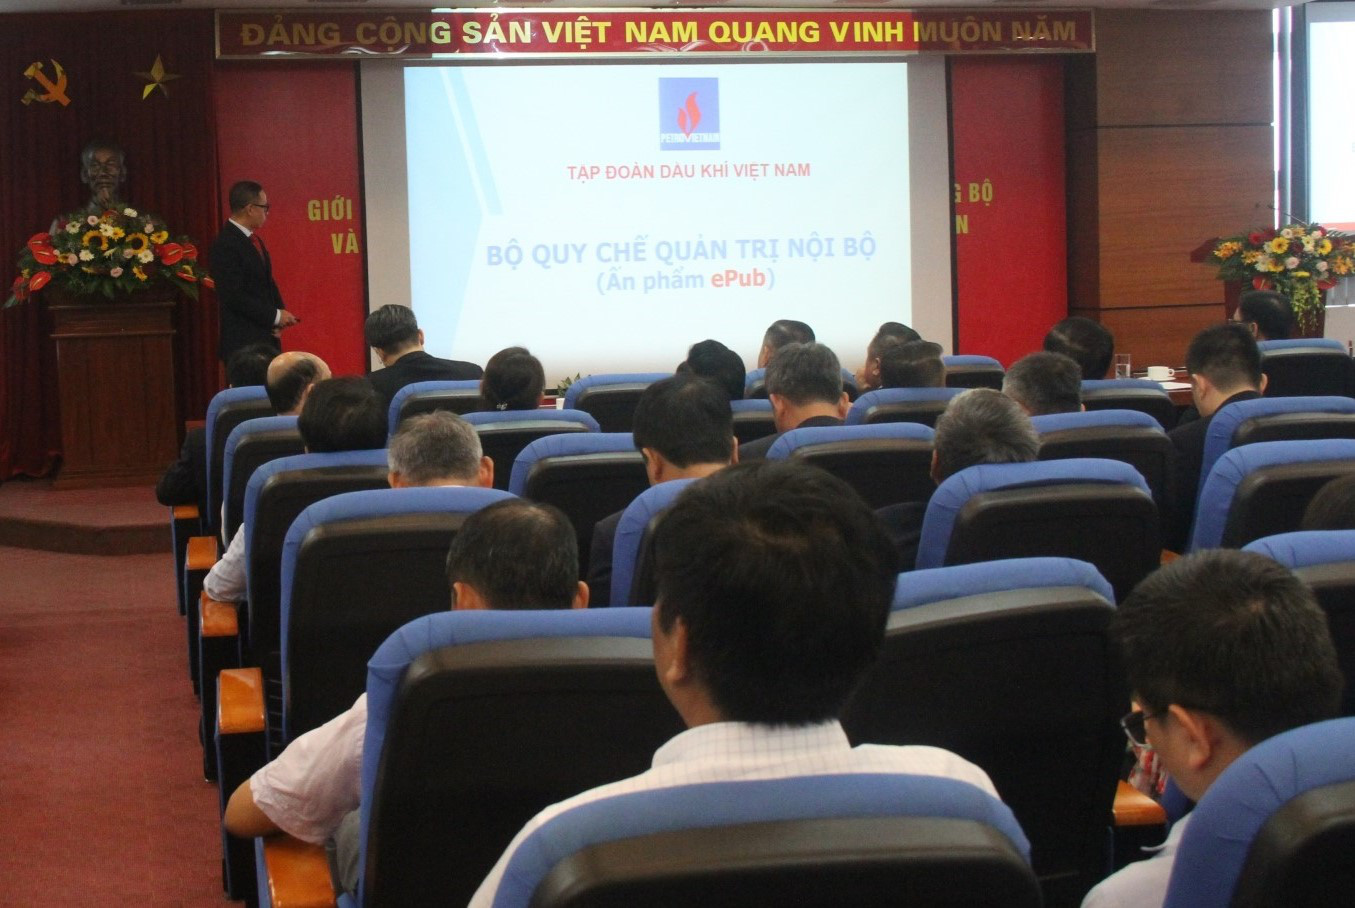 Bộ Quy chế quản trị nội bộ Tập đoàn Dầu khí Quốc gia Việt Nam ra đời là dấu mốc quan trọng - Ảnh 2.